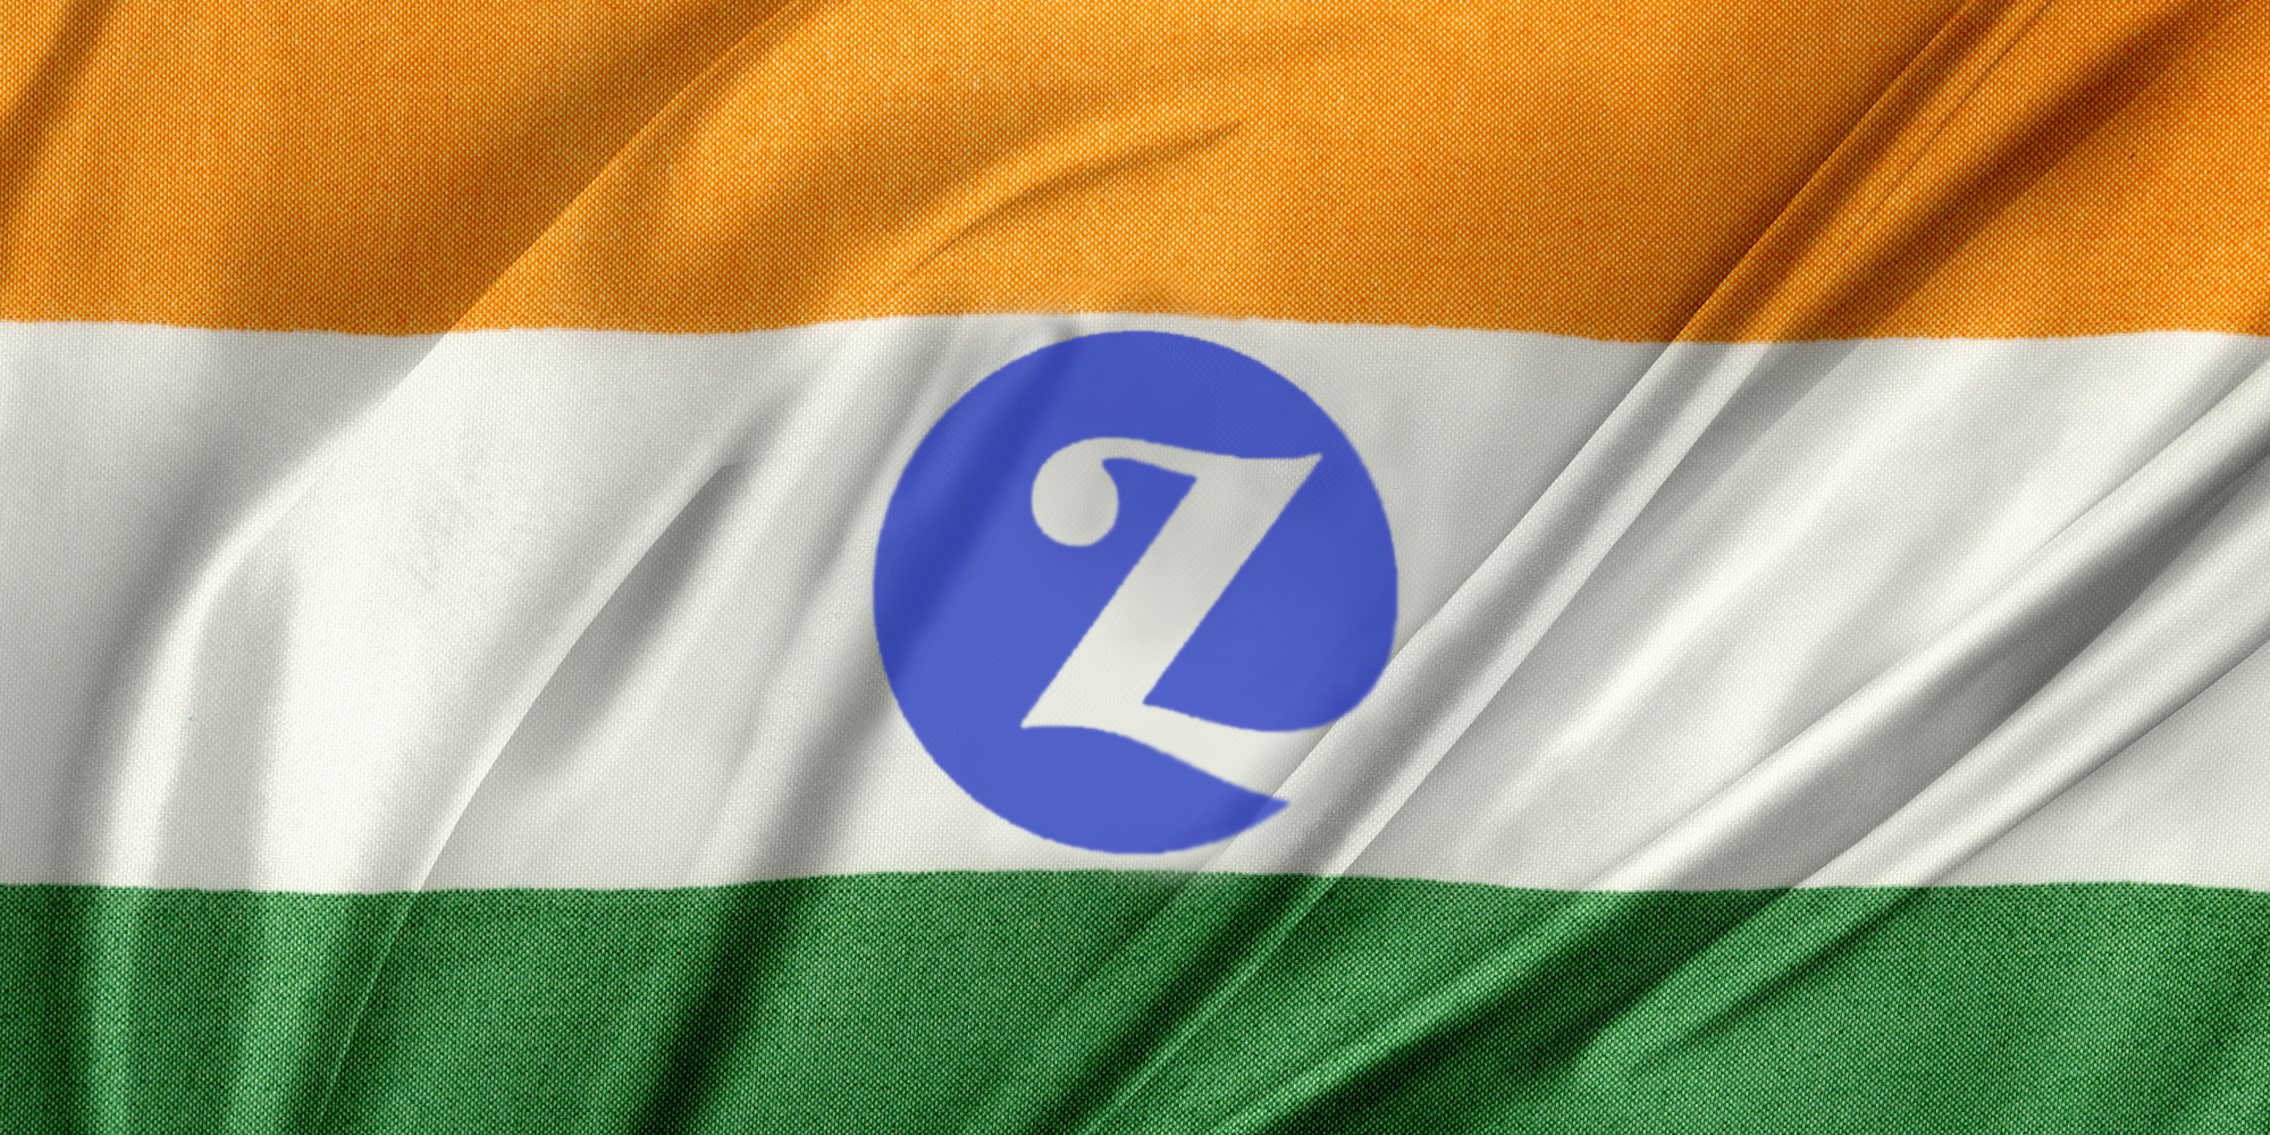 Zivame logo on India flag